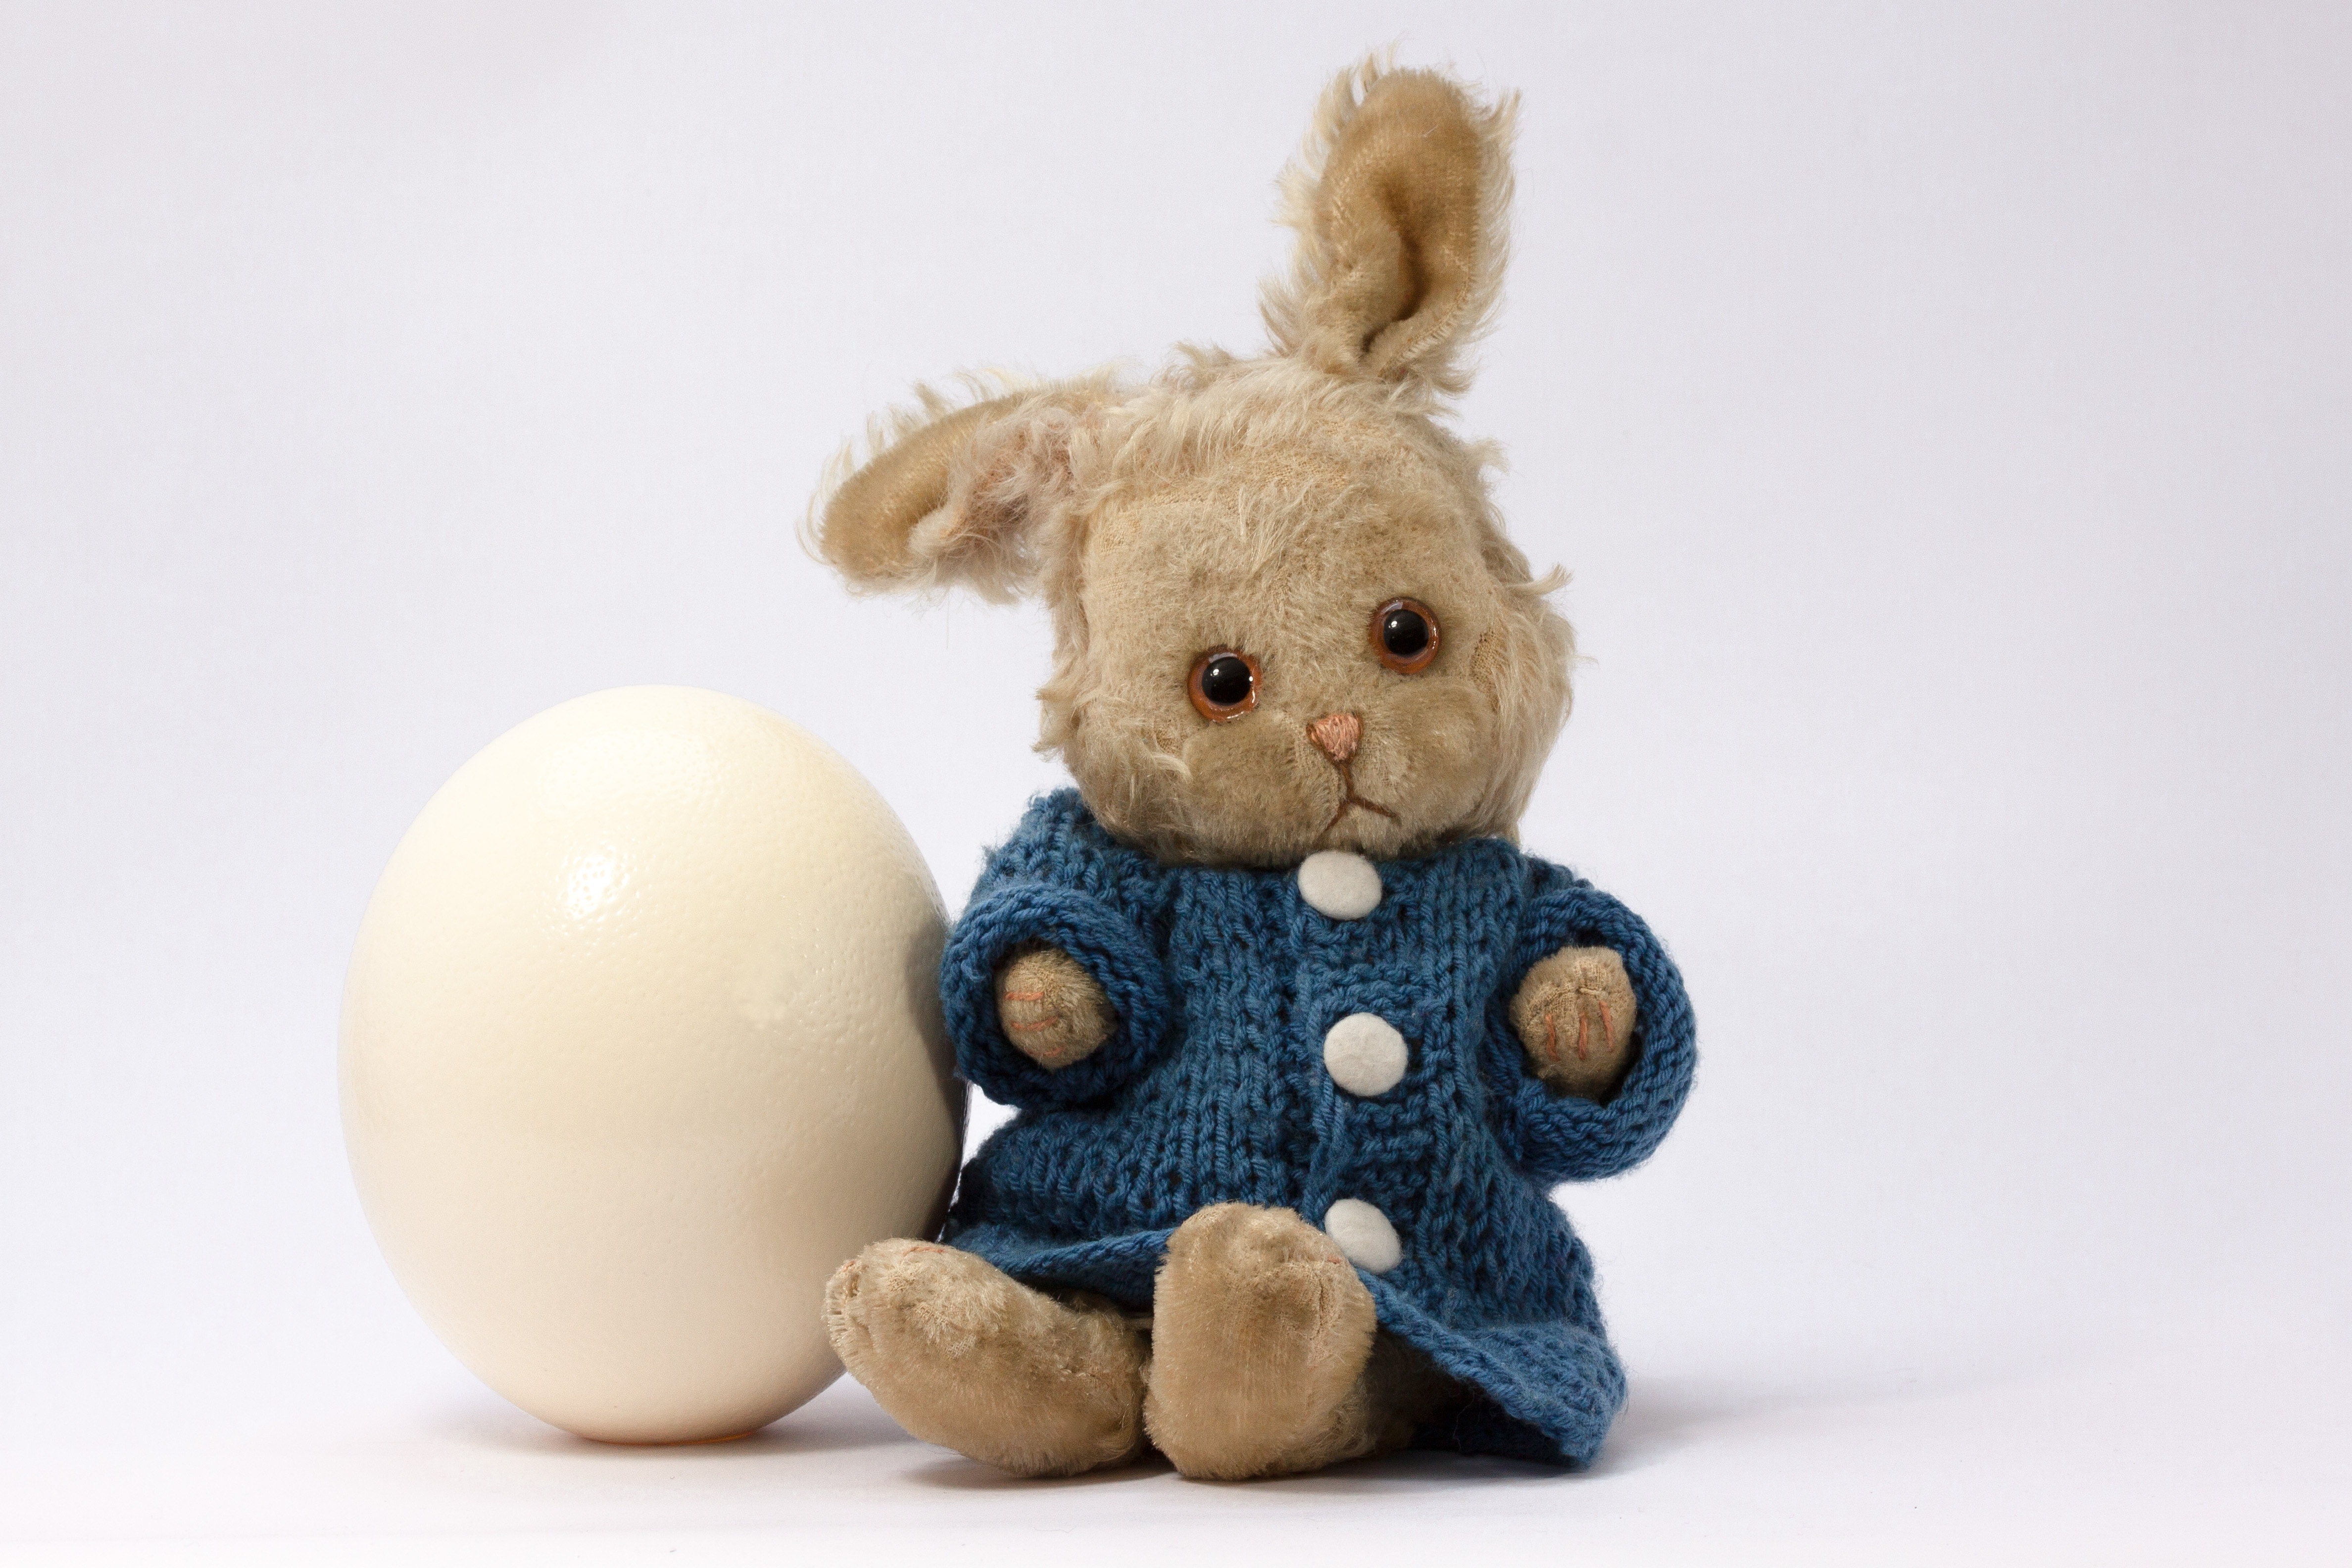 brown rabbit plush toybesides white egg